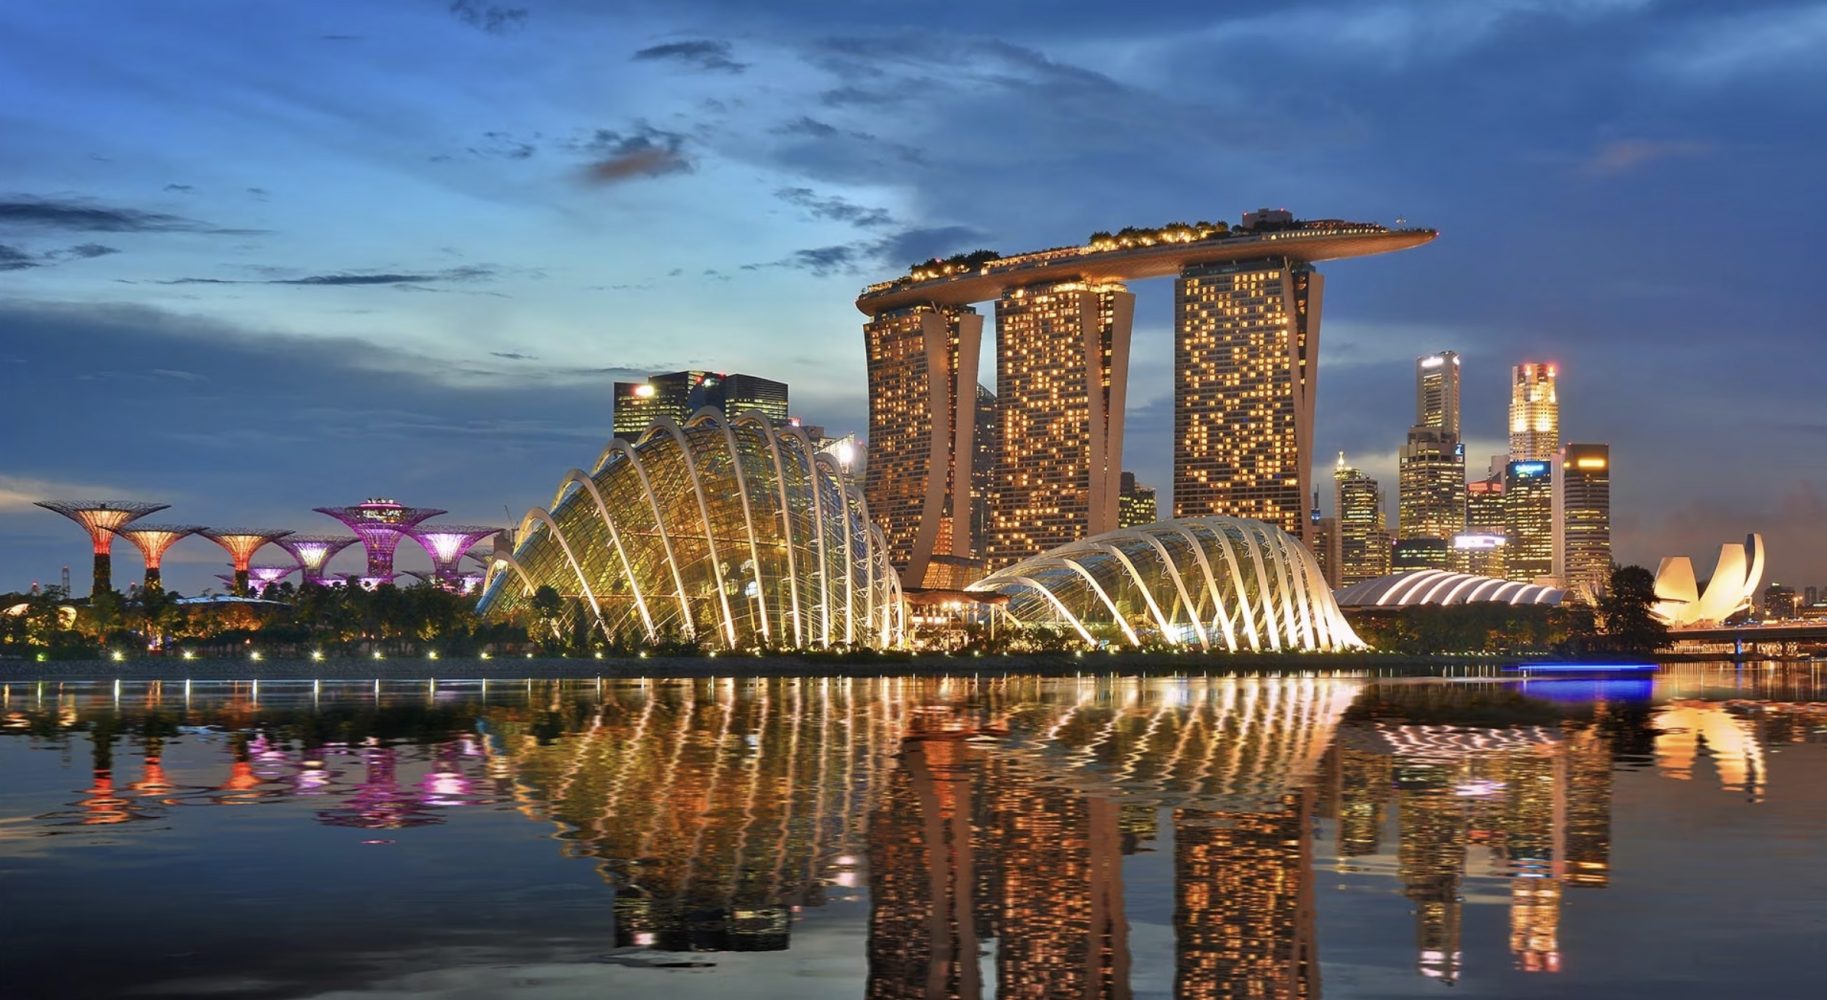 Du lịch Singapore mùa nào đẹp nhất trong năm?